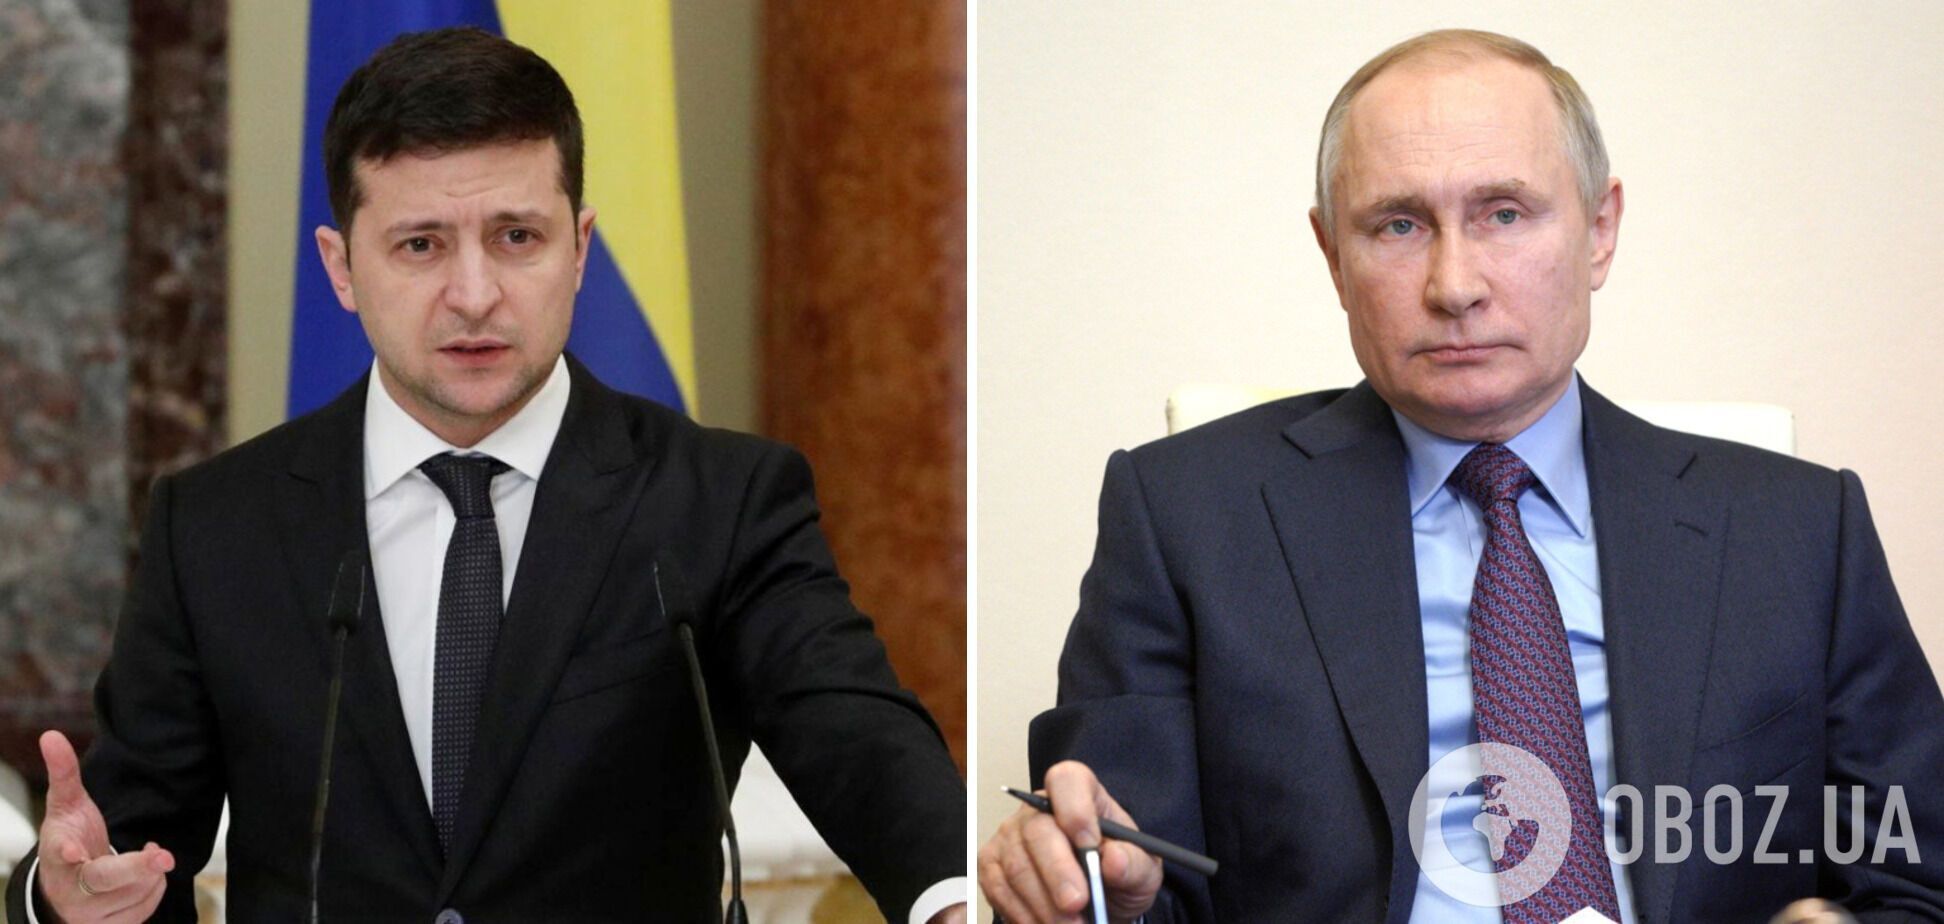 Зеленський заявив, що готовий до переговорів із Путіним у будь-якому форматі